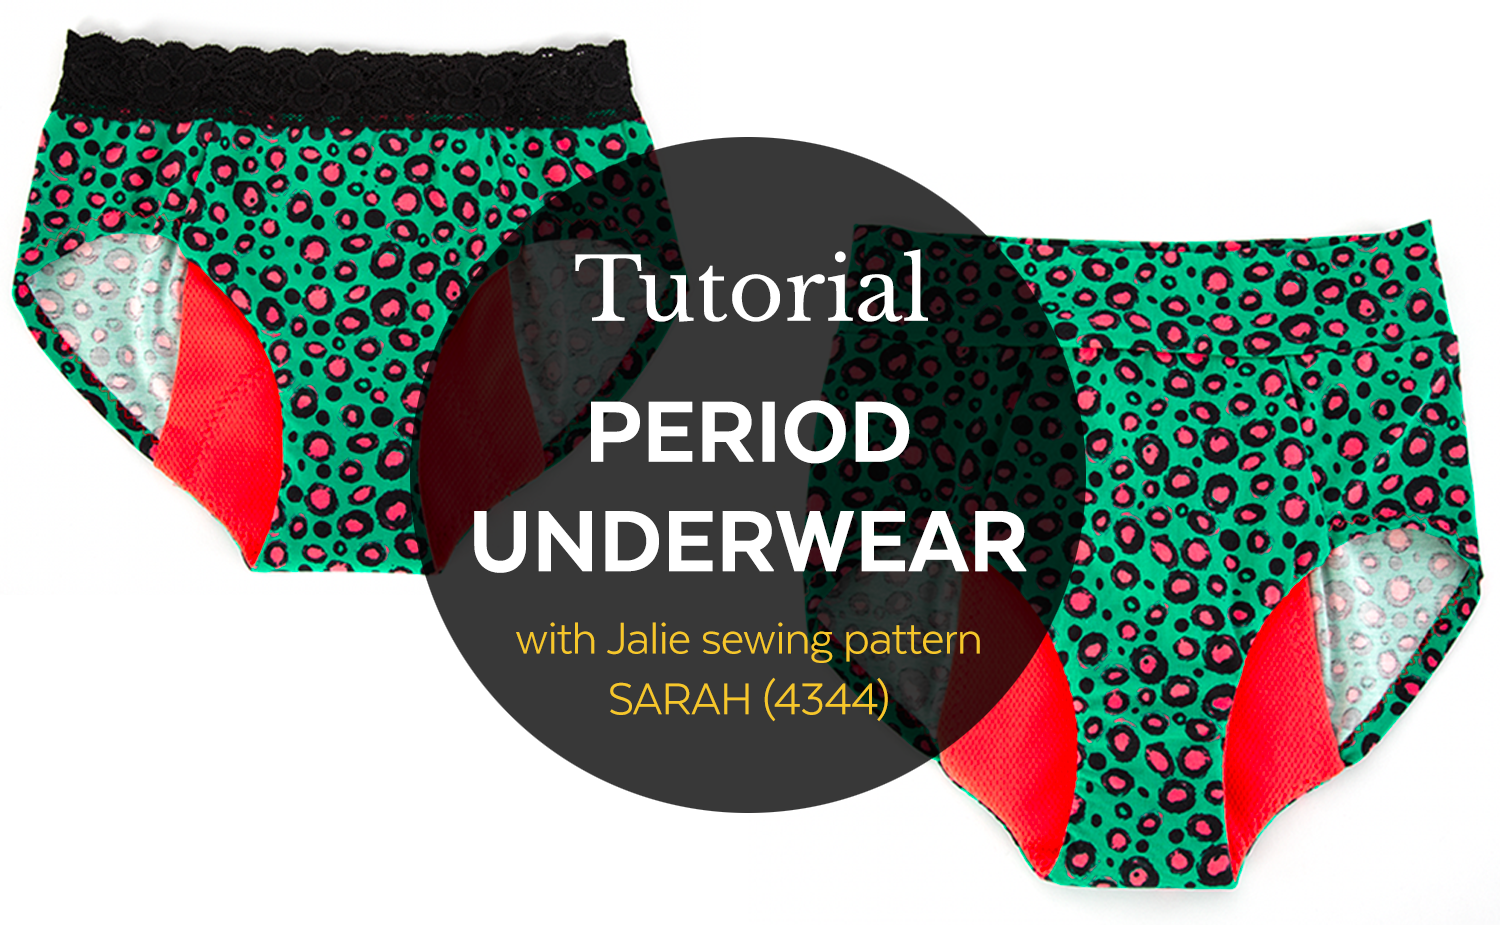 4344 / Sarah Period Underwear / Video Tutorial – Jalie